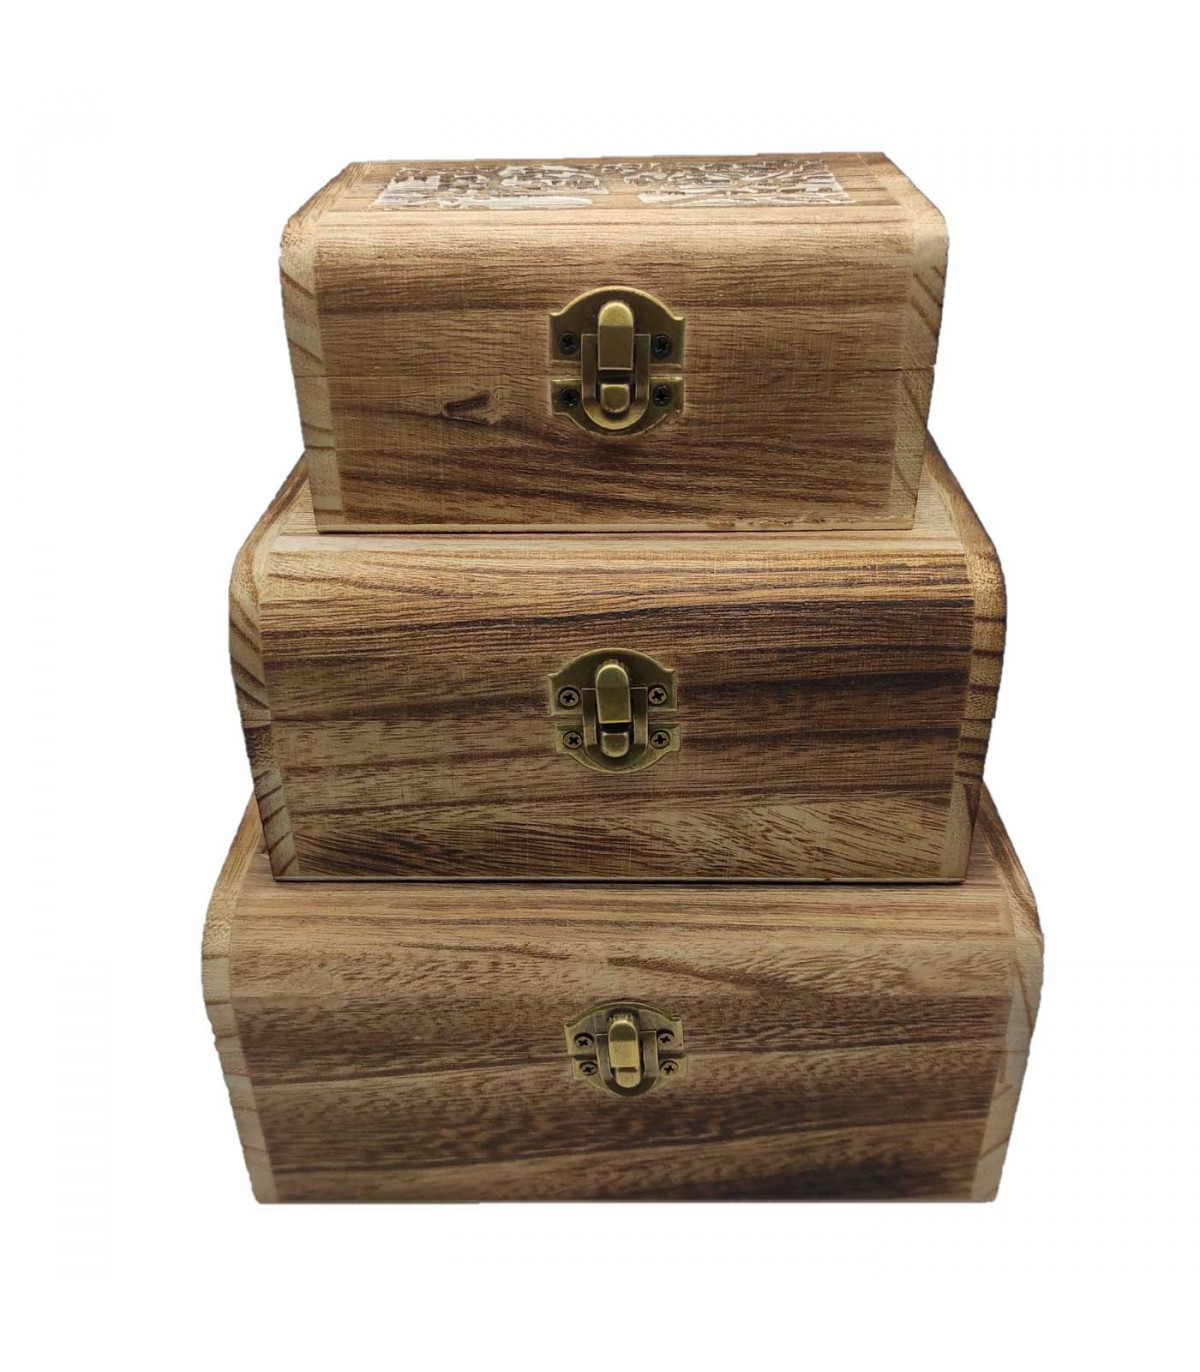 Set de 3 cajas de madera natural, forma de baúl, juego cajas decorativas  sin tratar, cierre metálico, almacenaje objetos, joyas